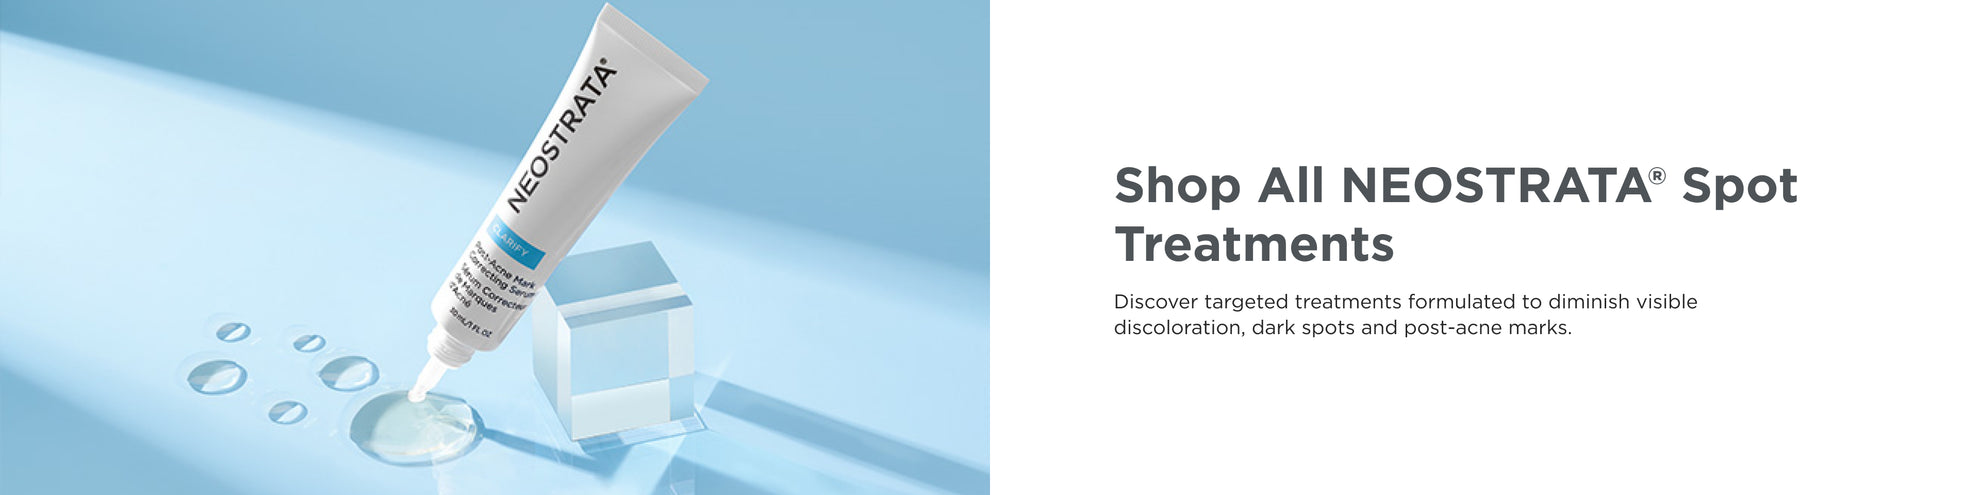 Shop All NEOSTRATA® Spot Treatments